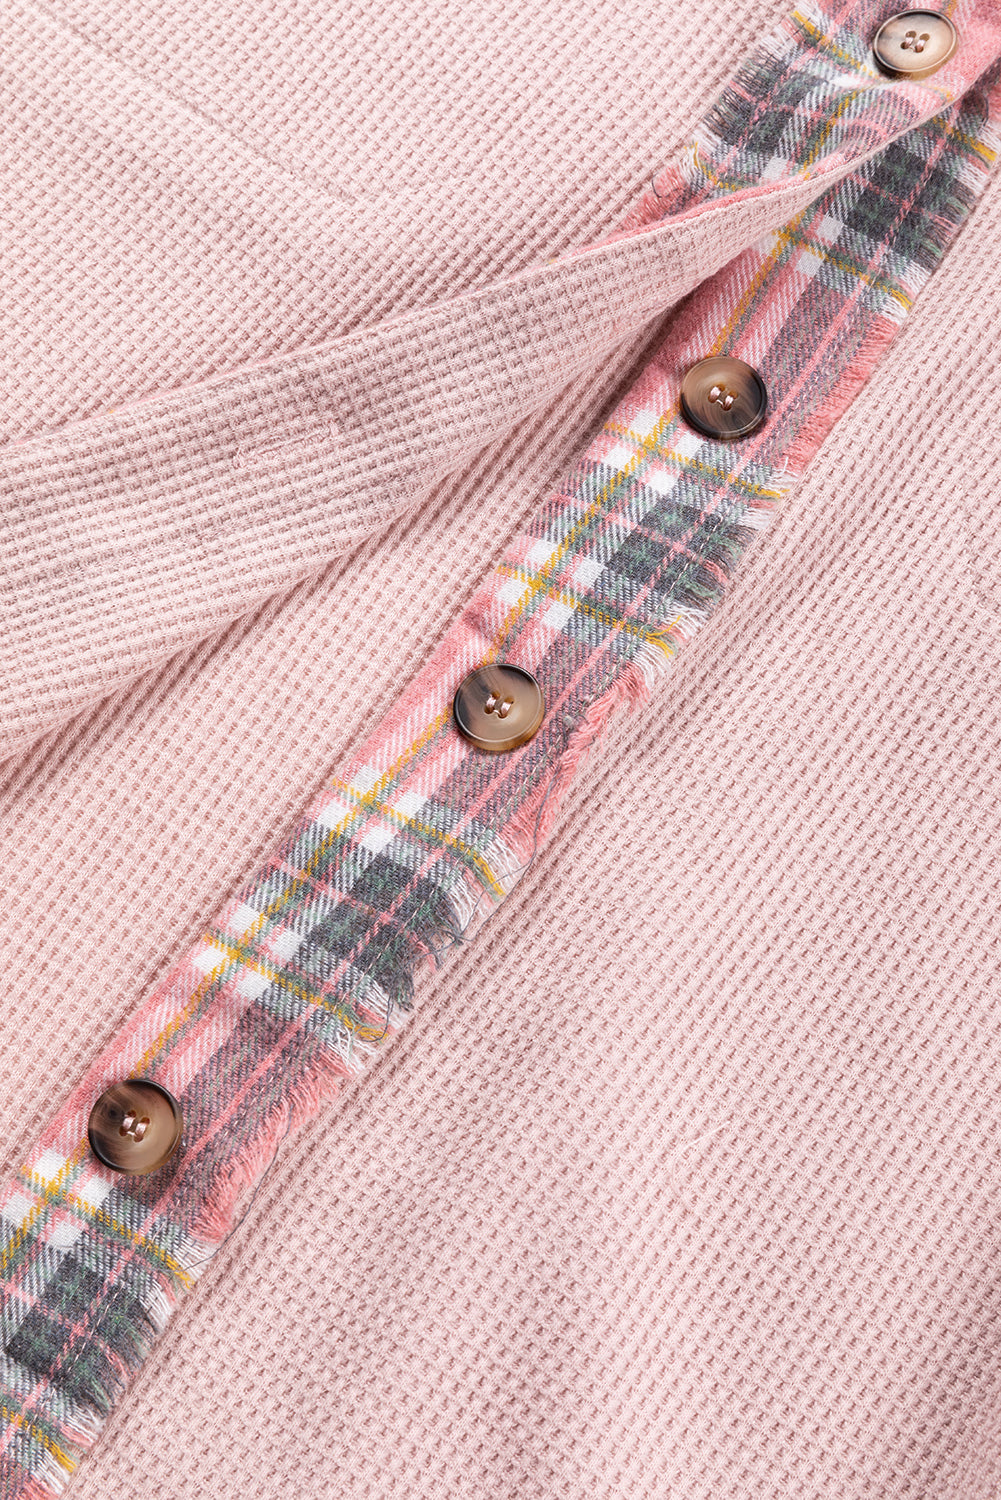 Shacket oversize in maglia a nido d'ape alta e bassa scozzese rosa albicocca